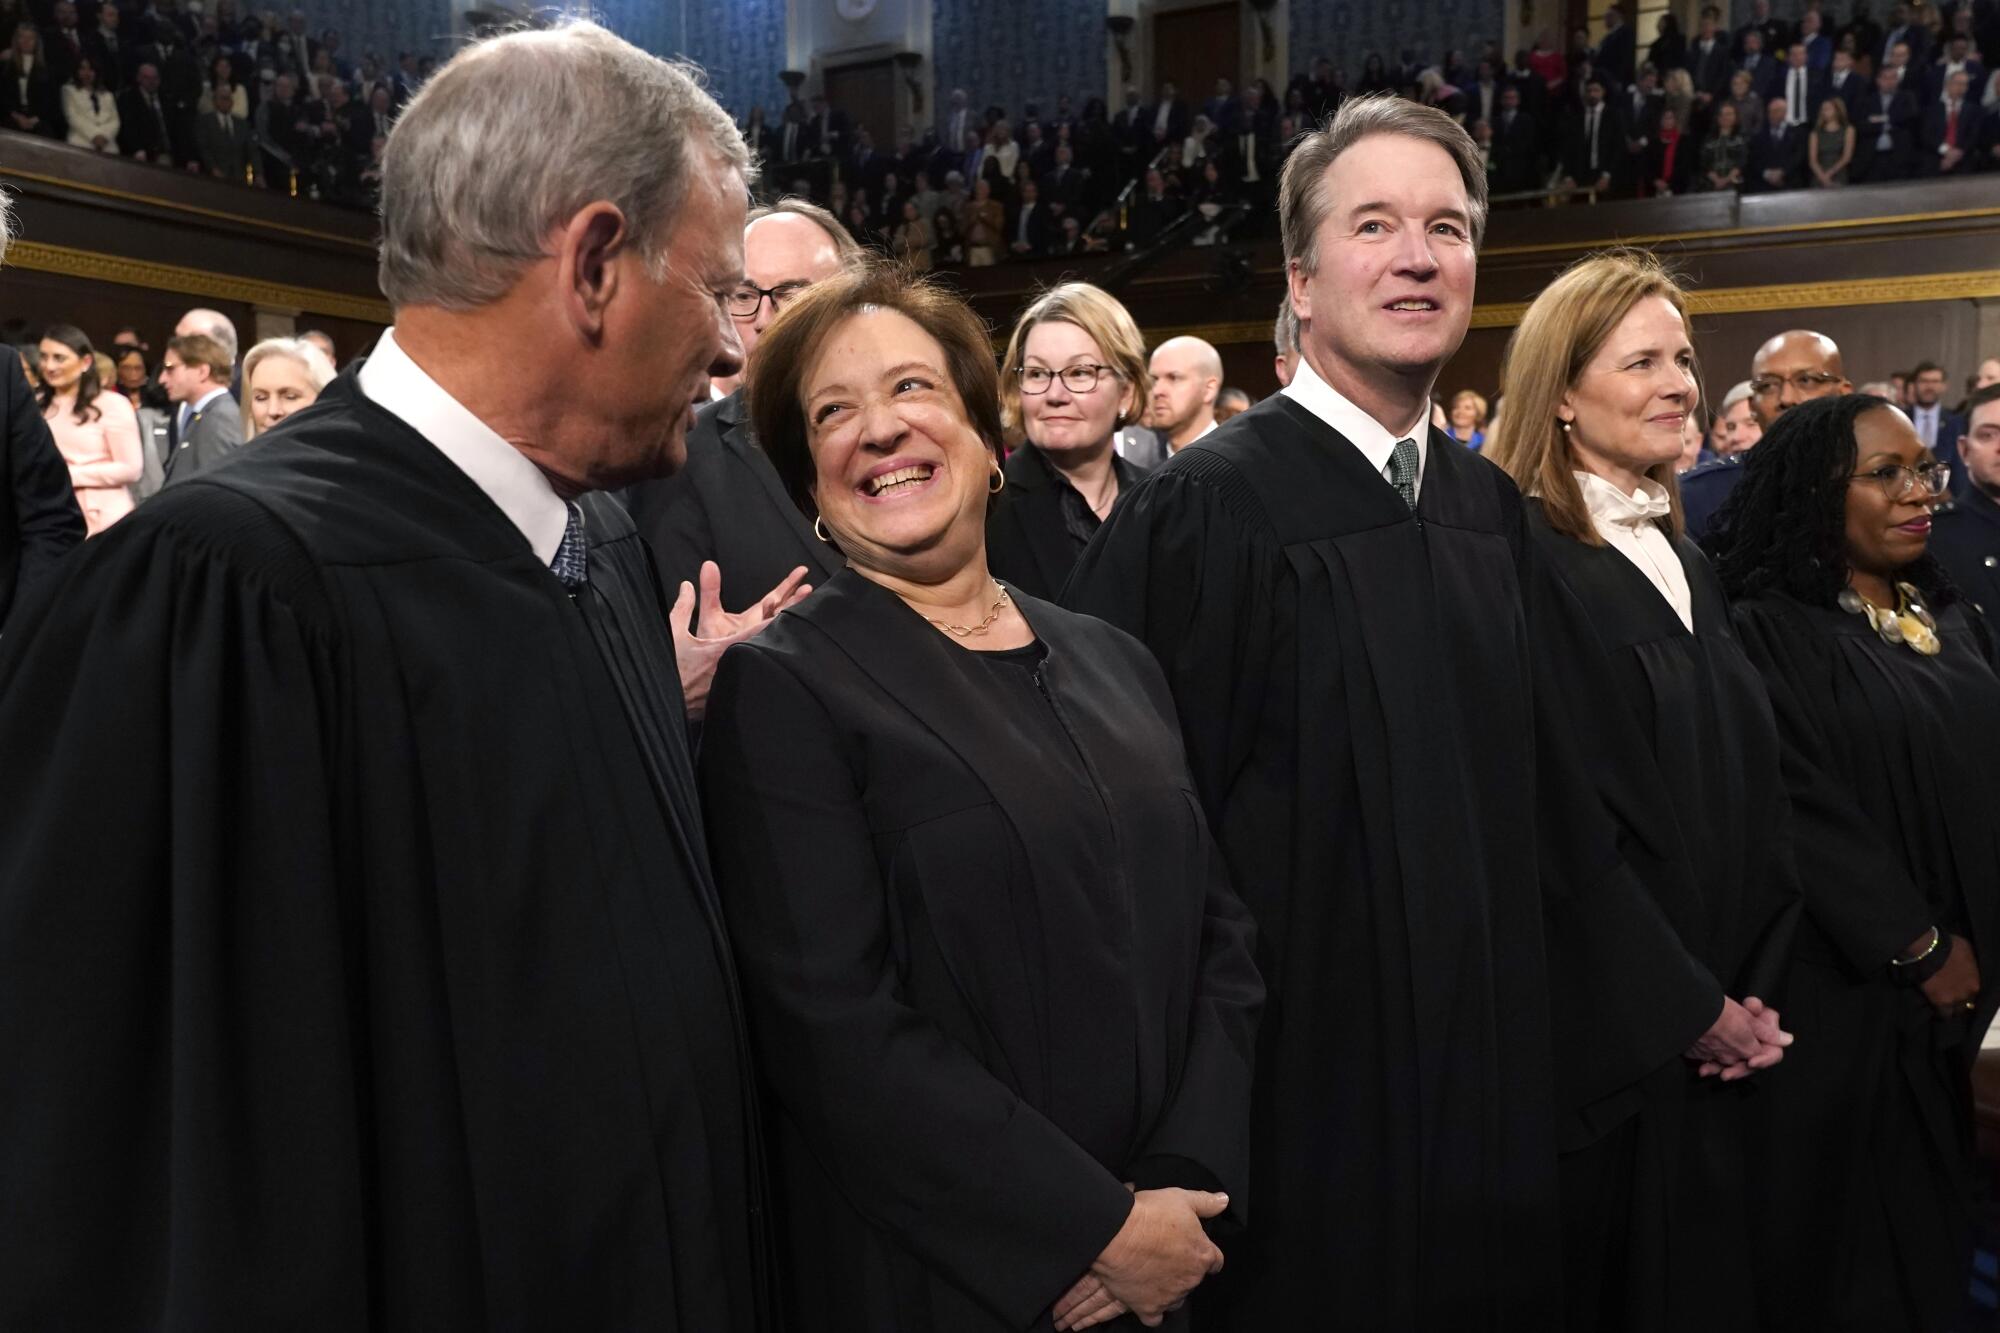 U.S. Supreme Court Justices are shown.